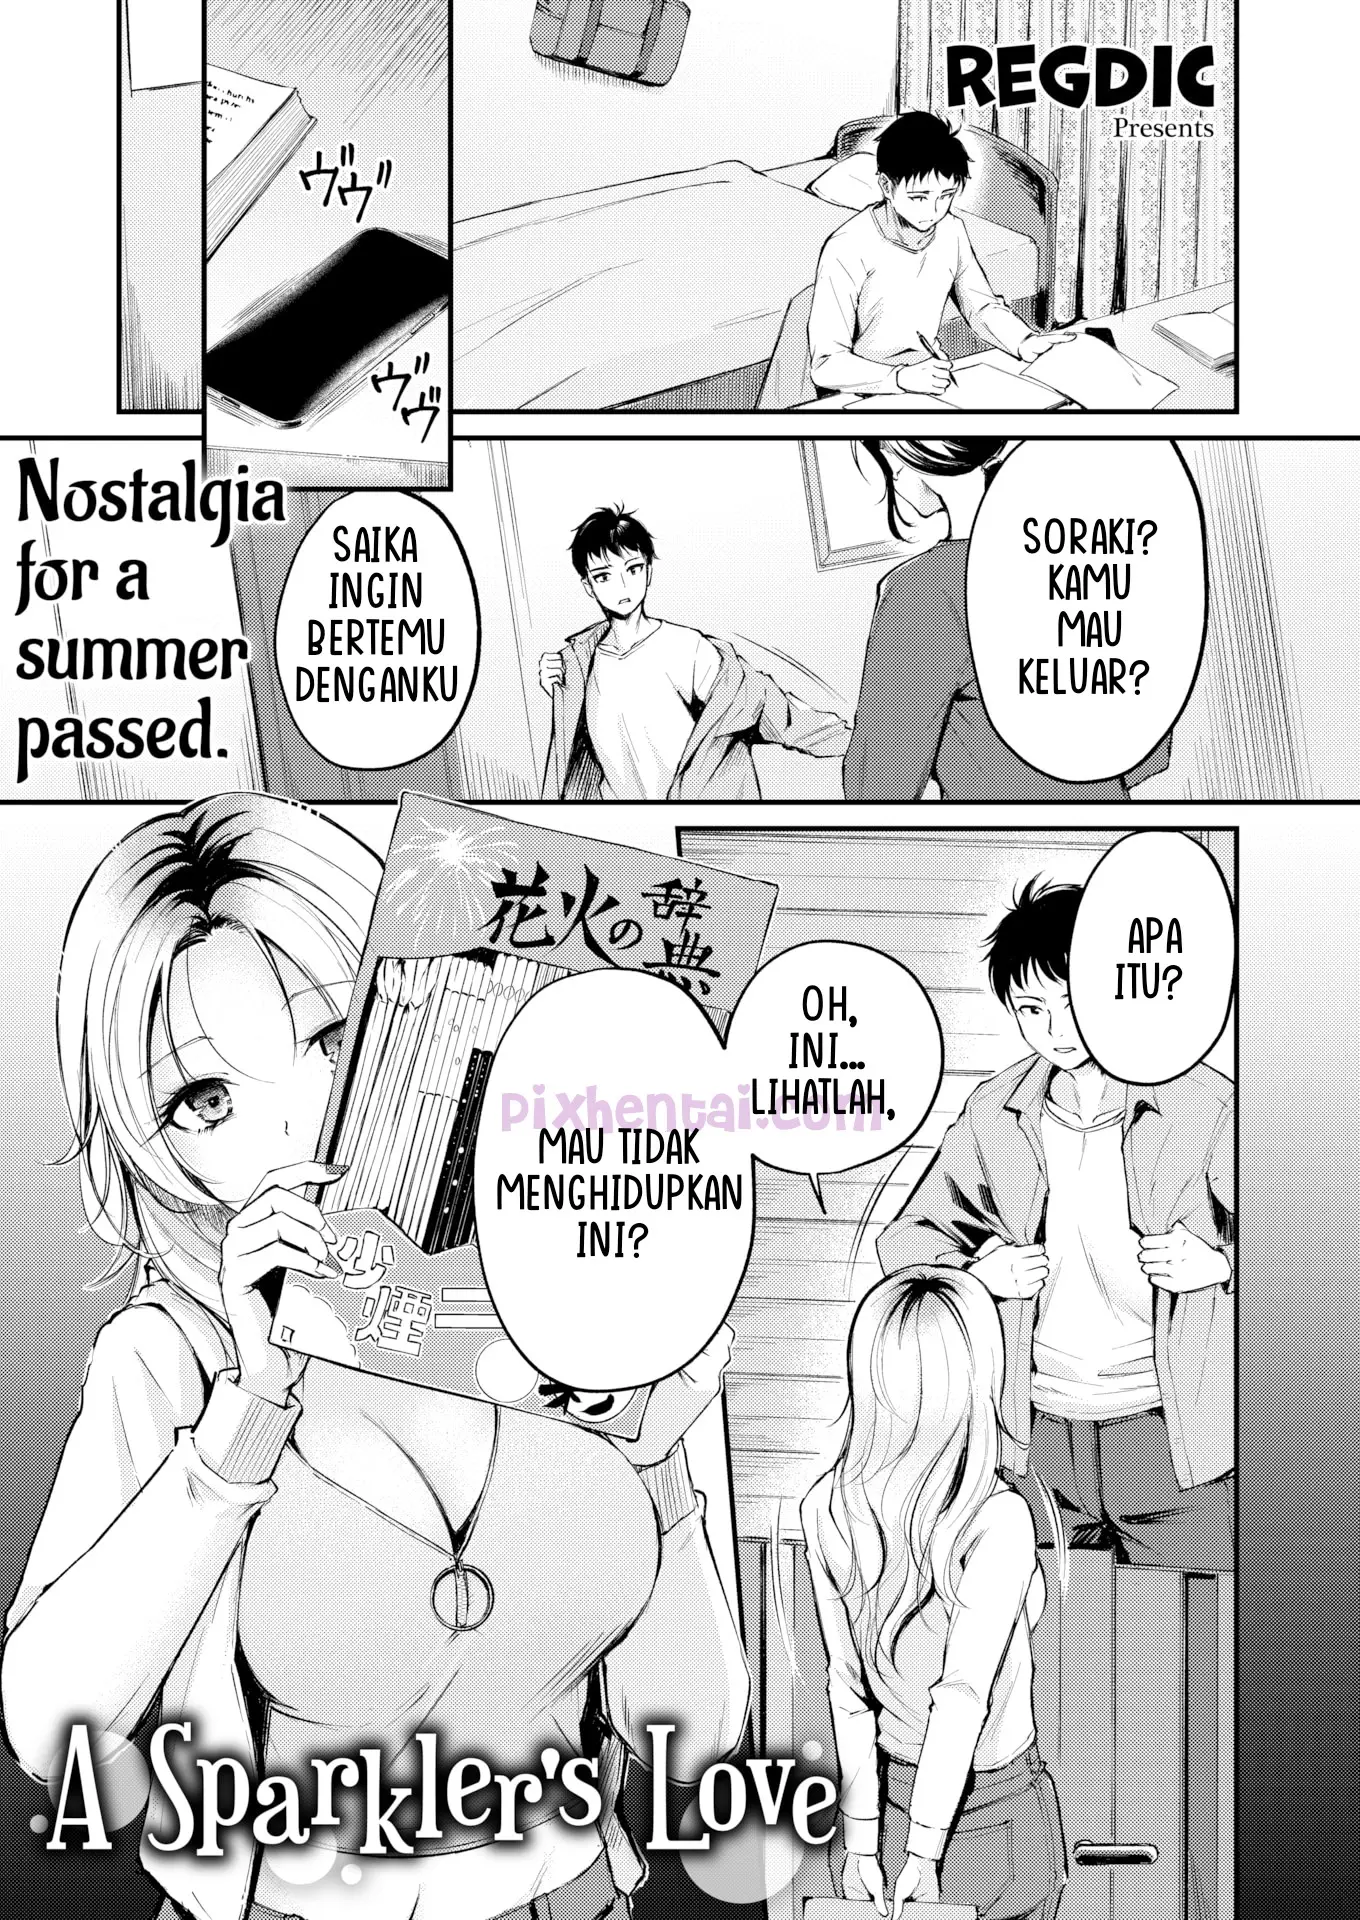 Komik hentai xxx manga sex bokep A Sparklers Love Nostalgia for a summer passed 1